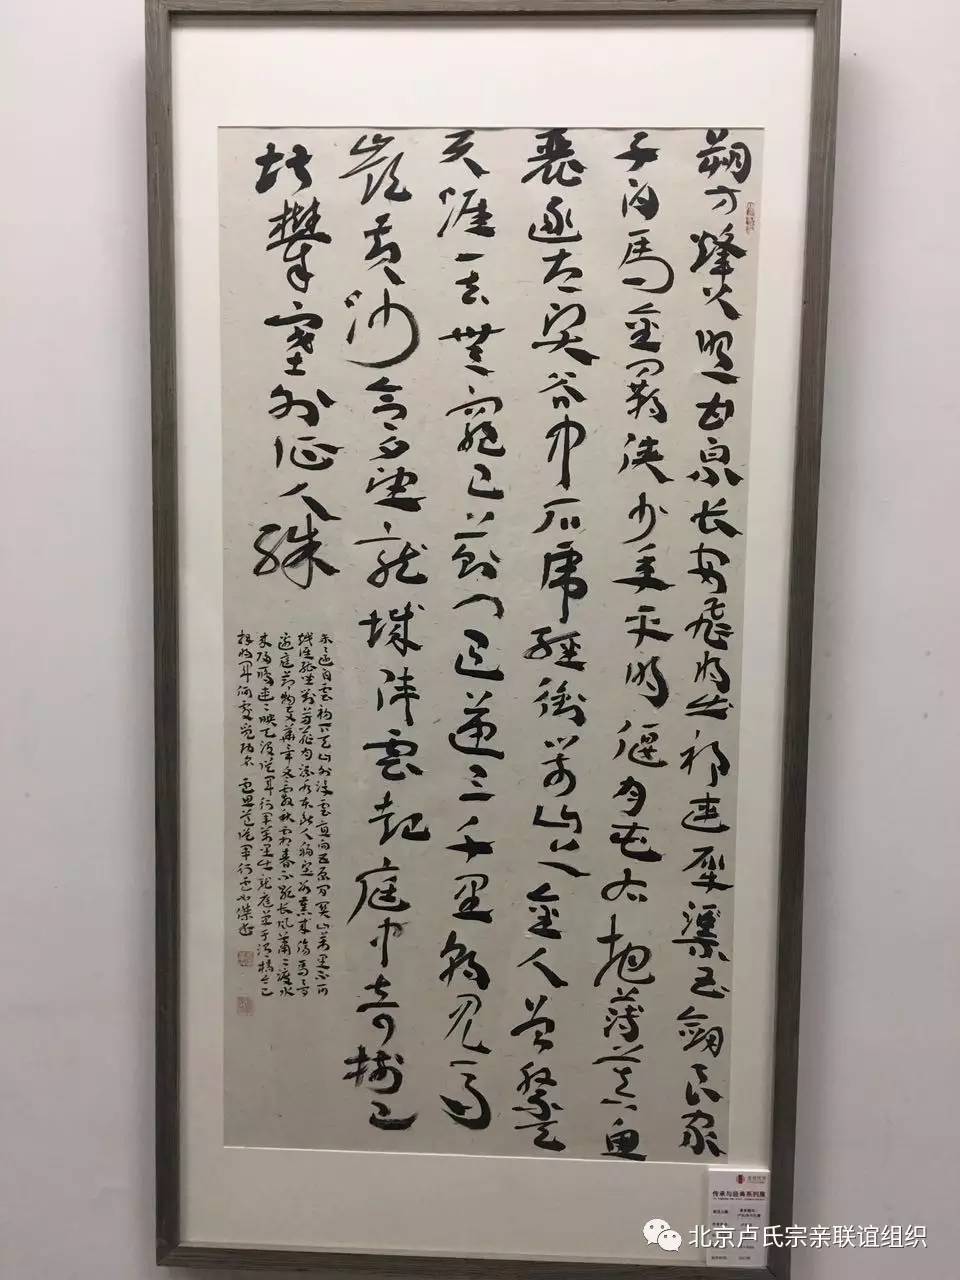 章草雄风一卢如杰书法展在中国国家画院国展艺术中心隆重开幕